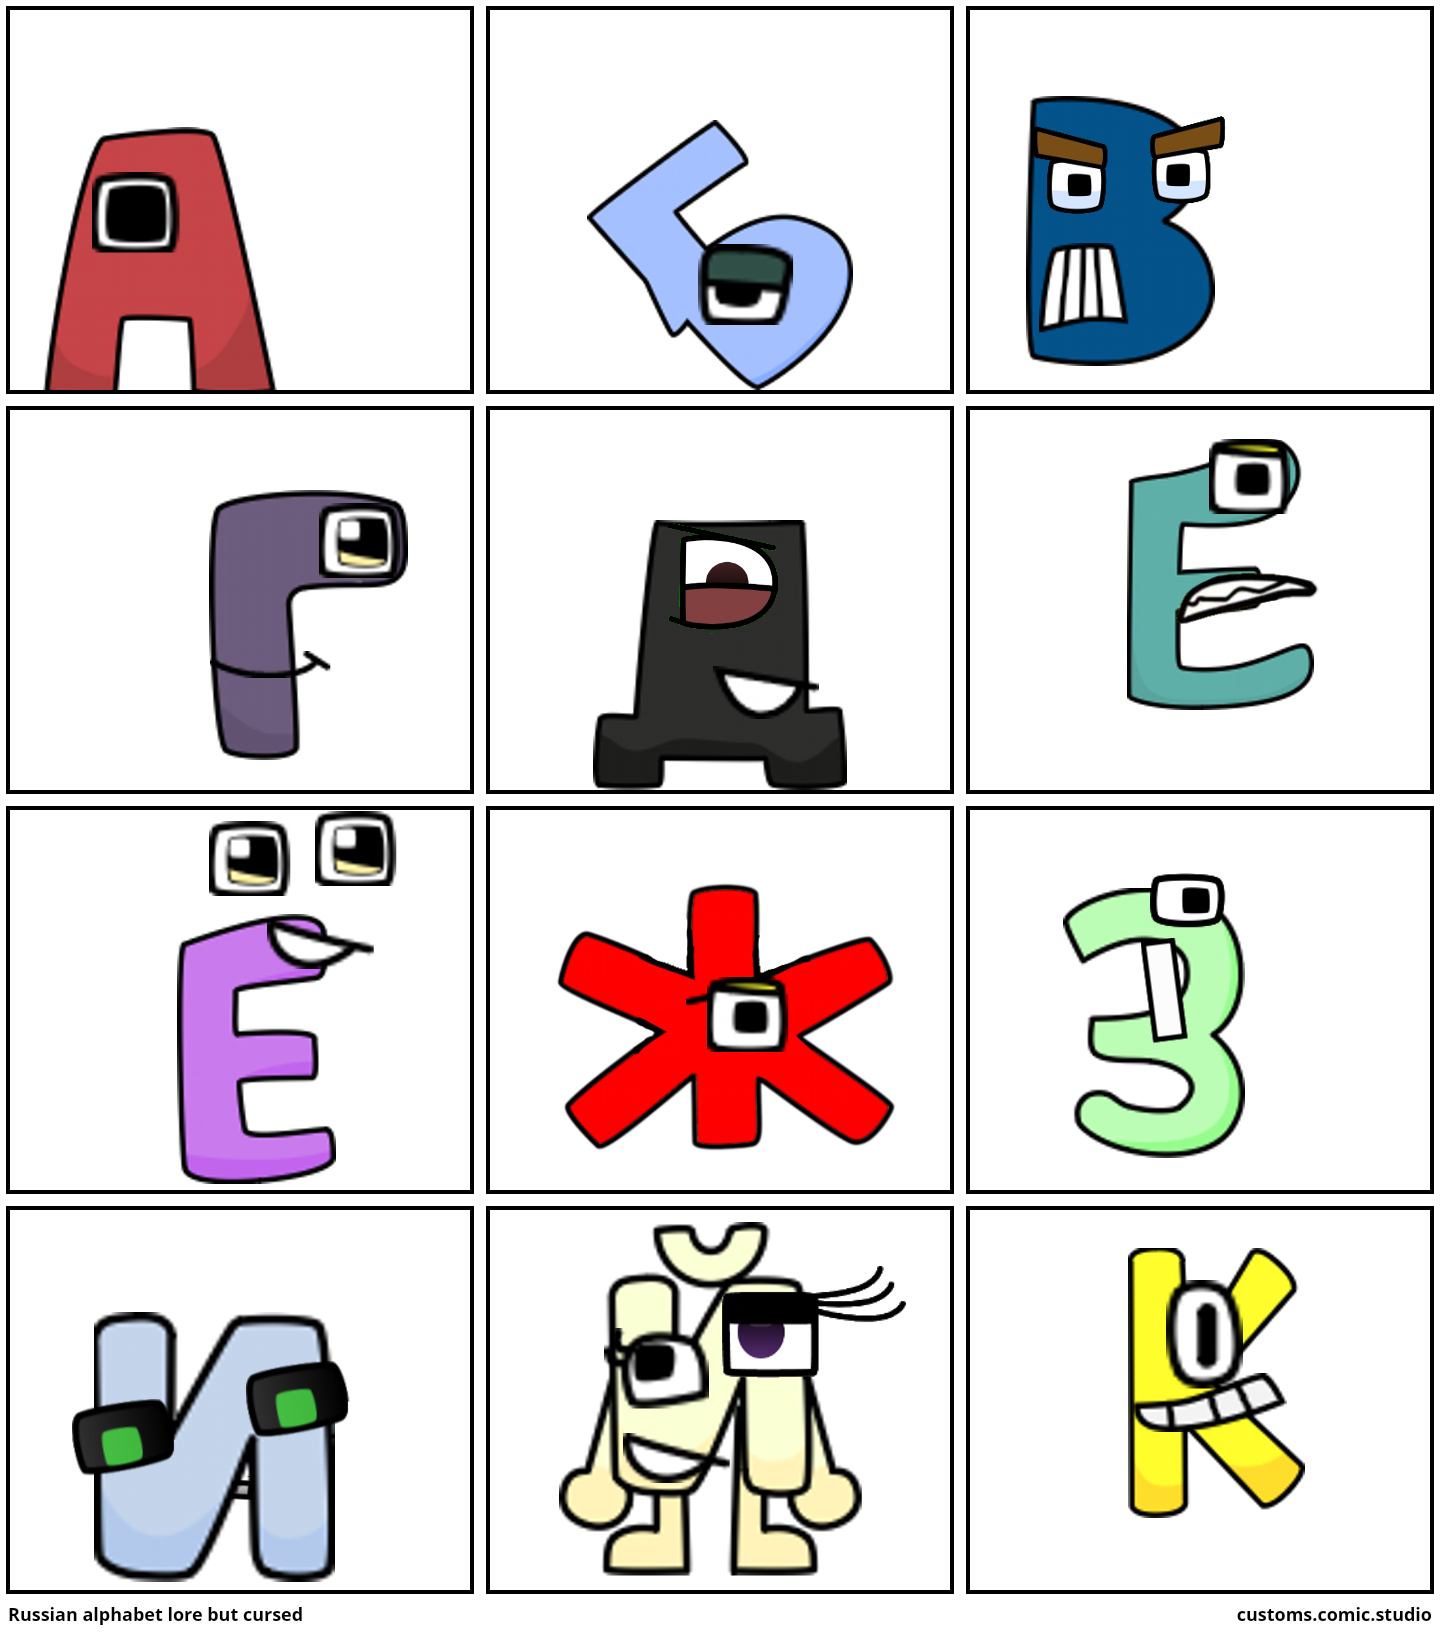 Russian Alphabet Lore But Cursed In Alphabet Lore Comic Studio in